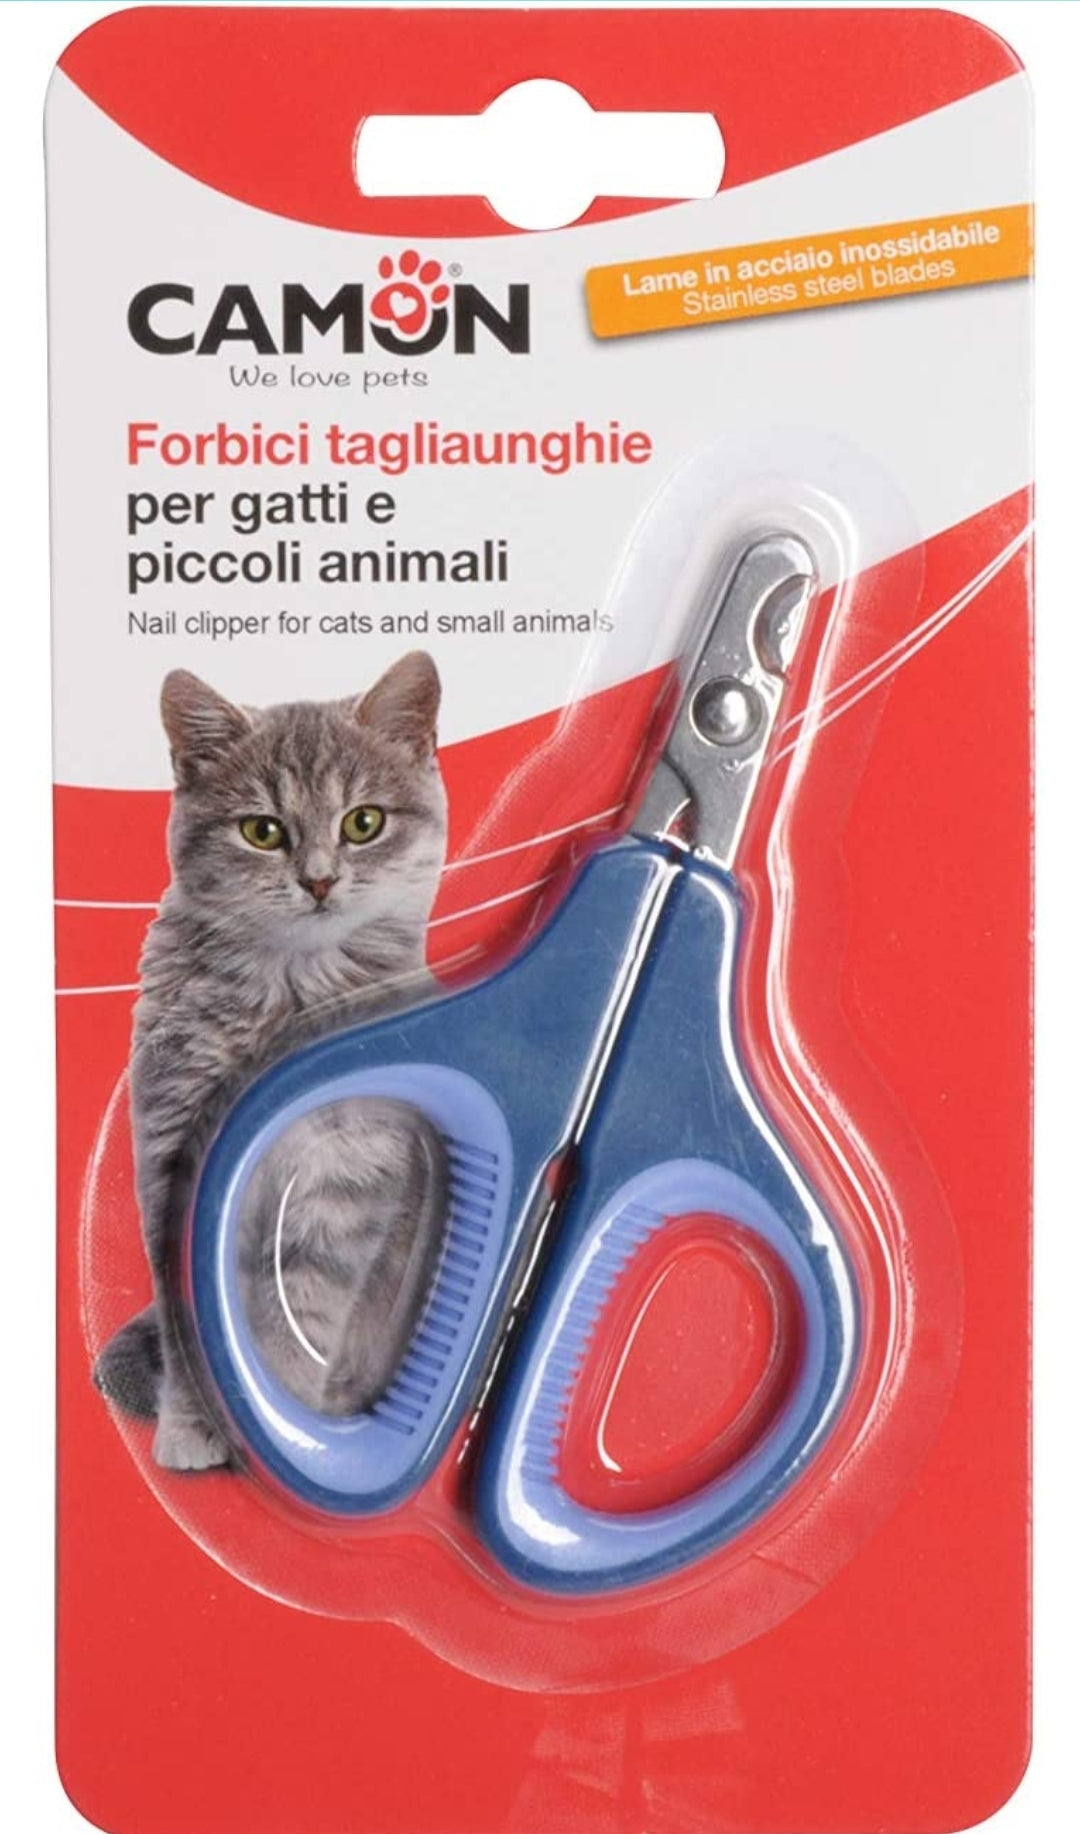 Camon forbicine tagliaunghie per gatti e piccoli animali